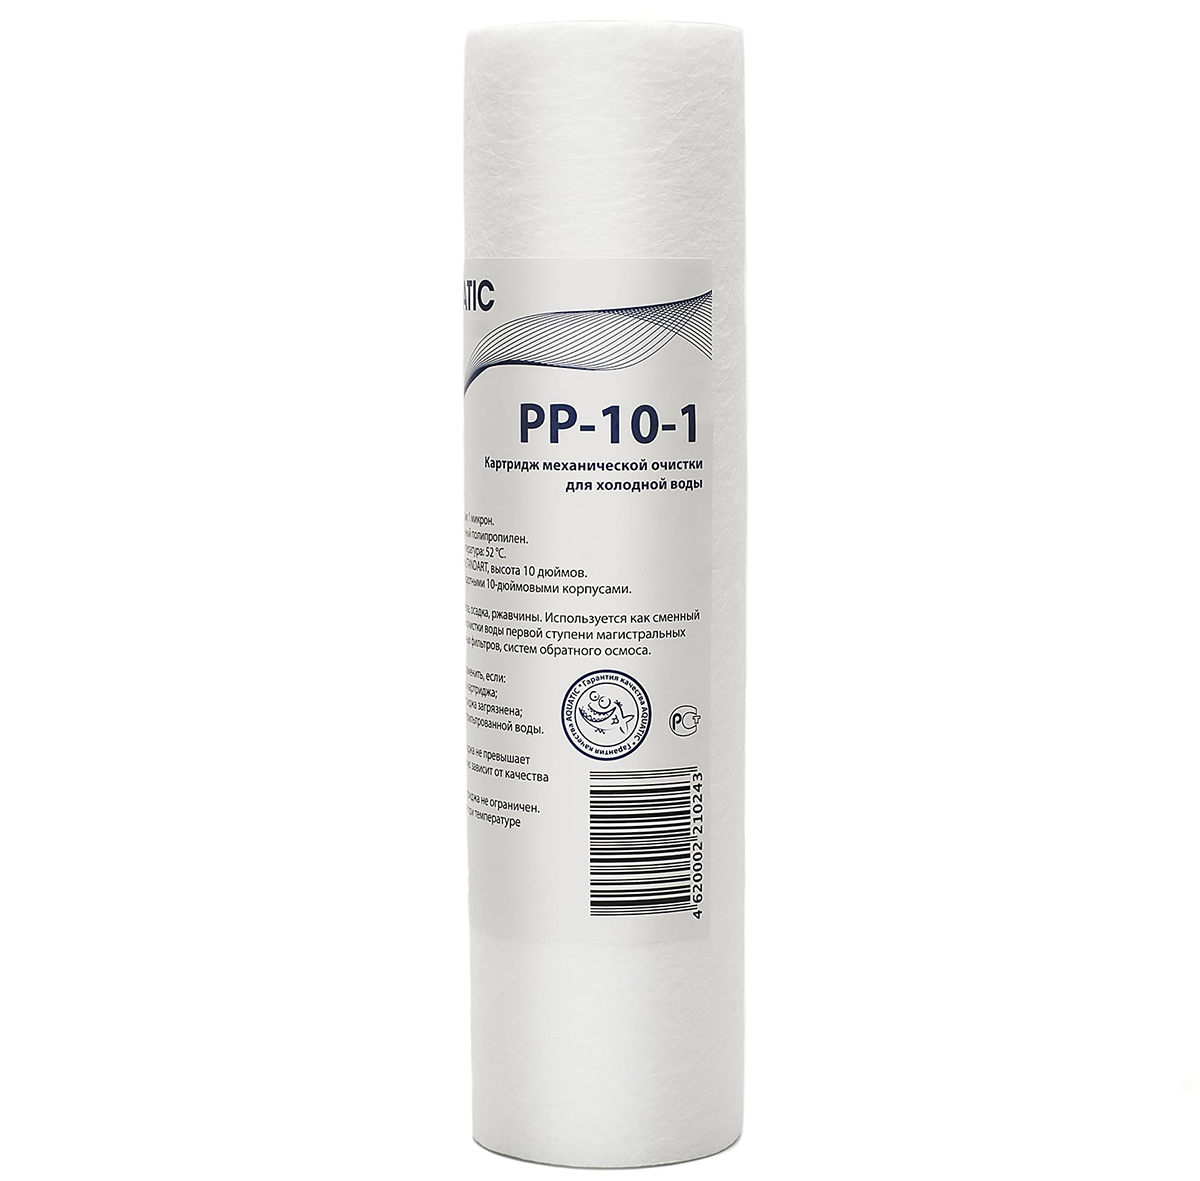 Картридж фильтра Aquatic PP-10-1 для холодной воды полипропиленовый 1 мкм 10SL